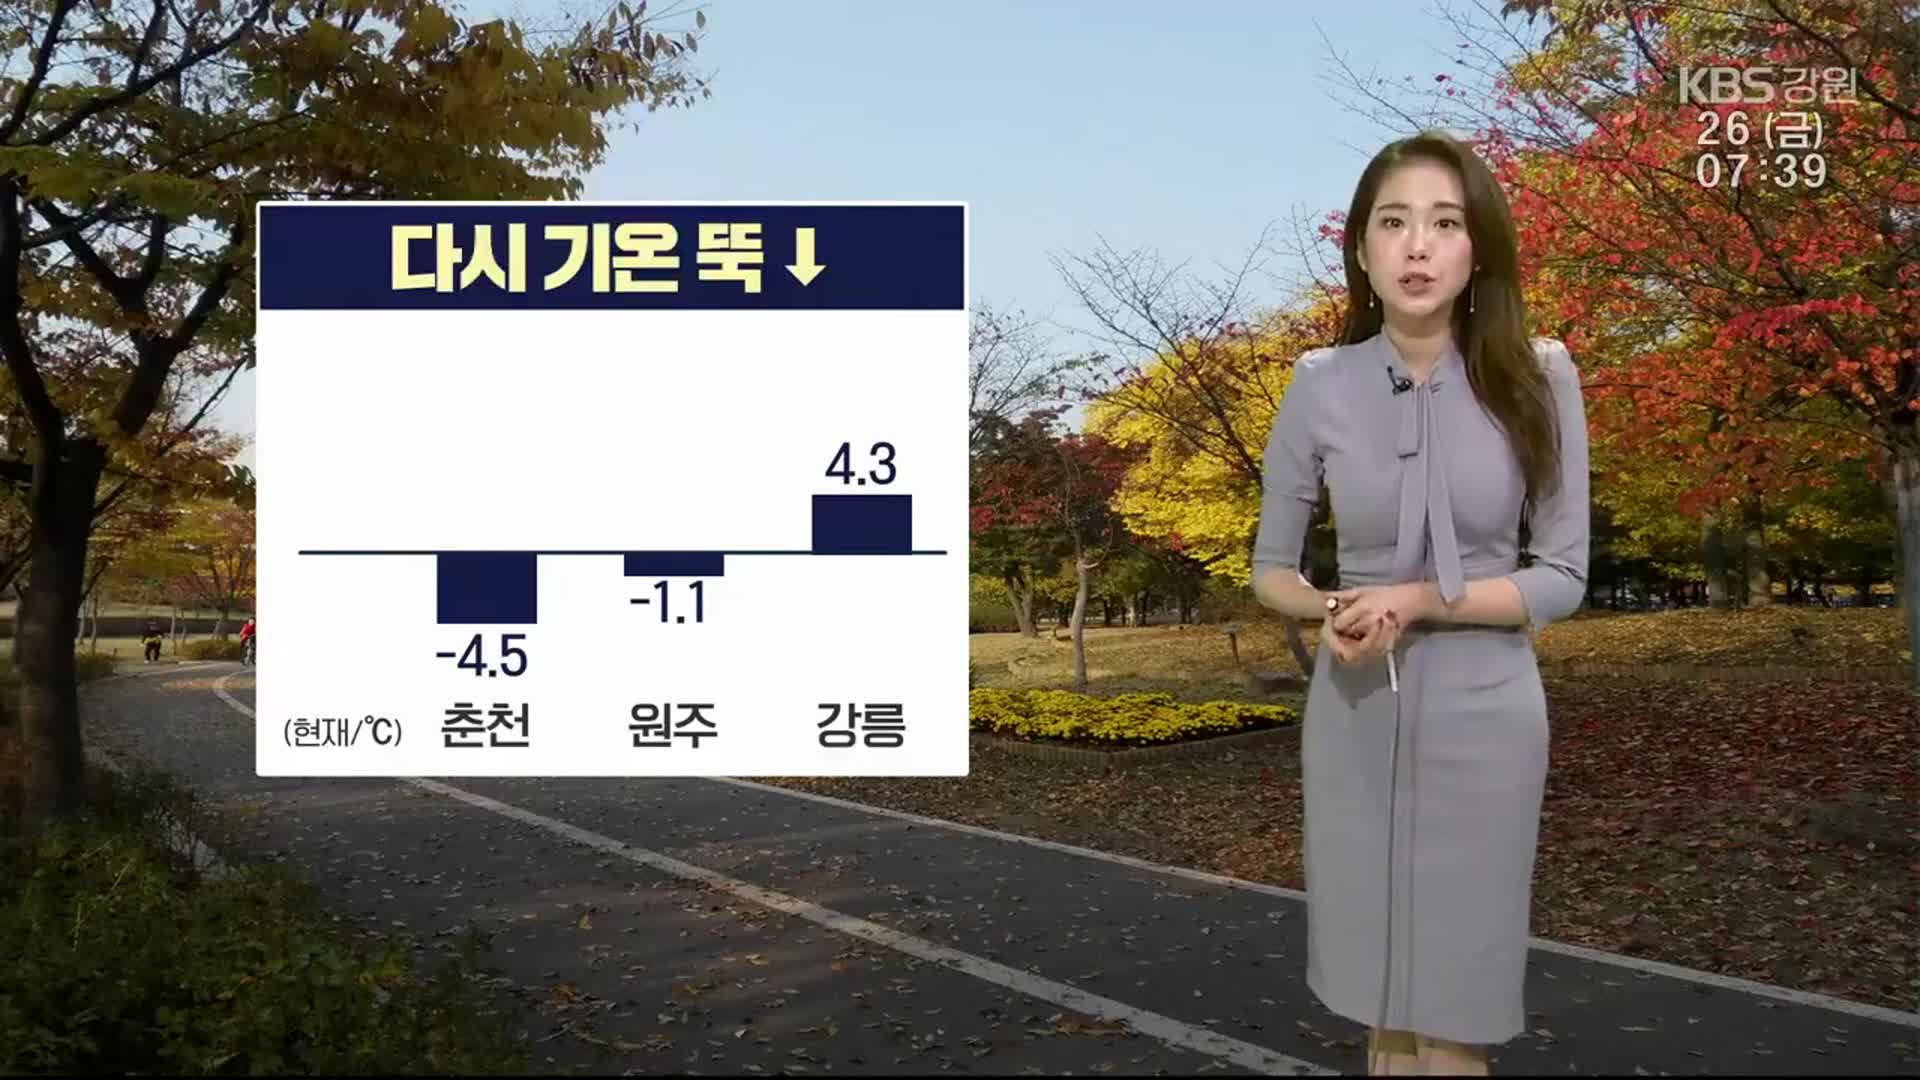 [날씨] 강원 다시 기온 뚝↓…춘천 -4.5도·원주 -1.1도